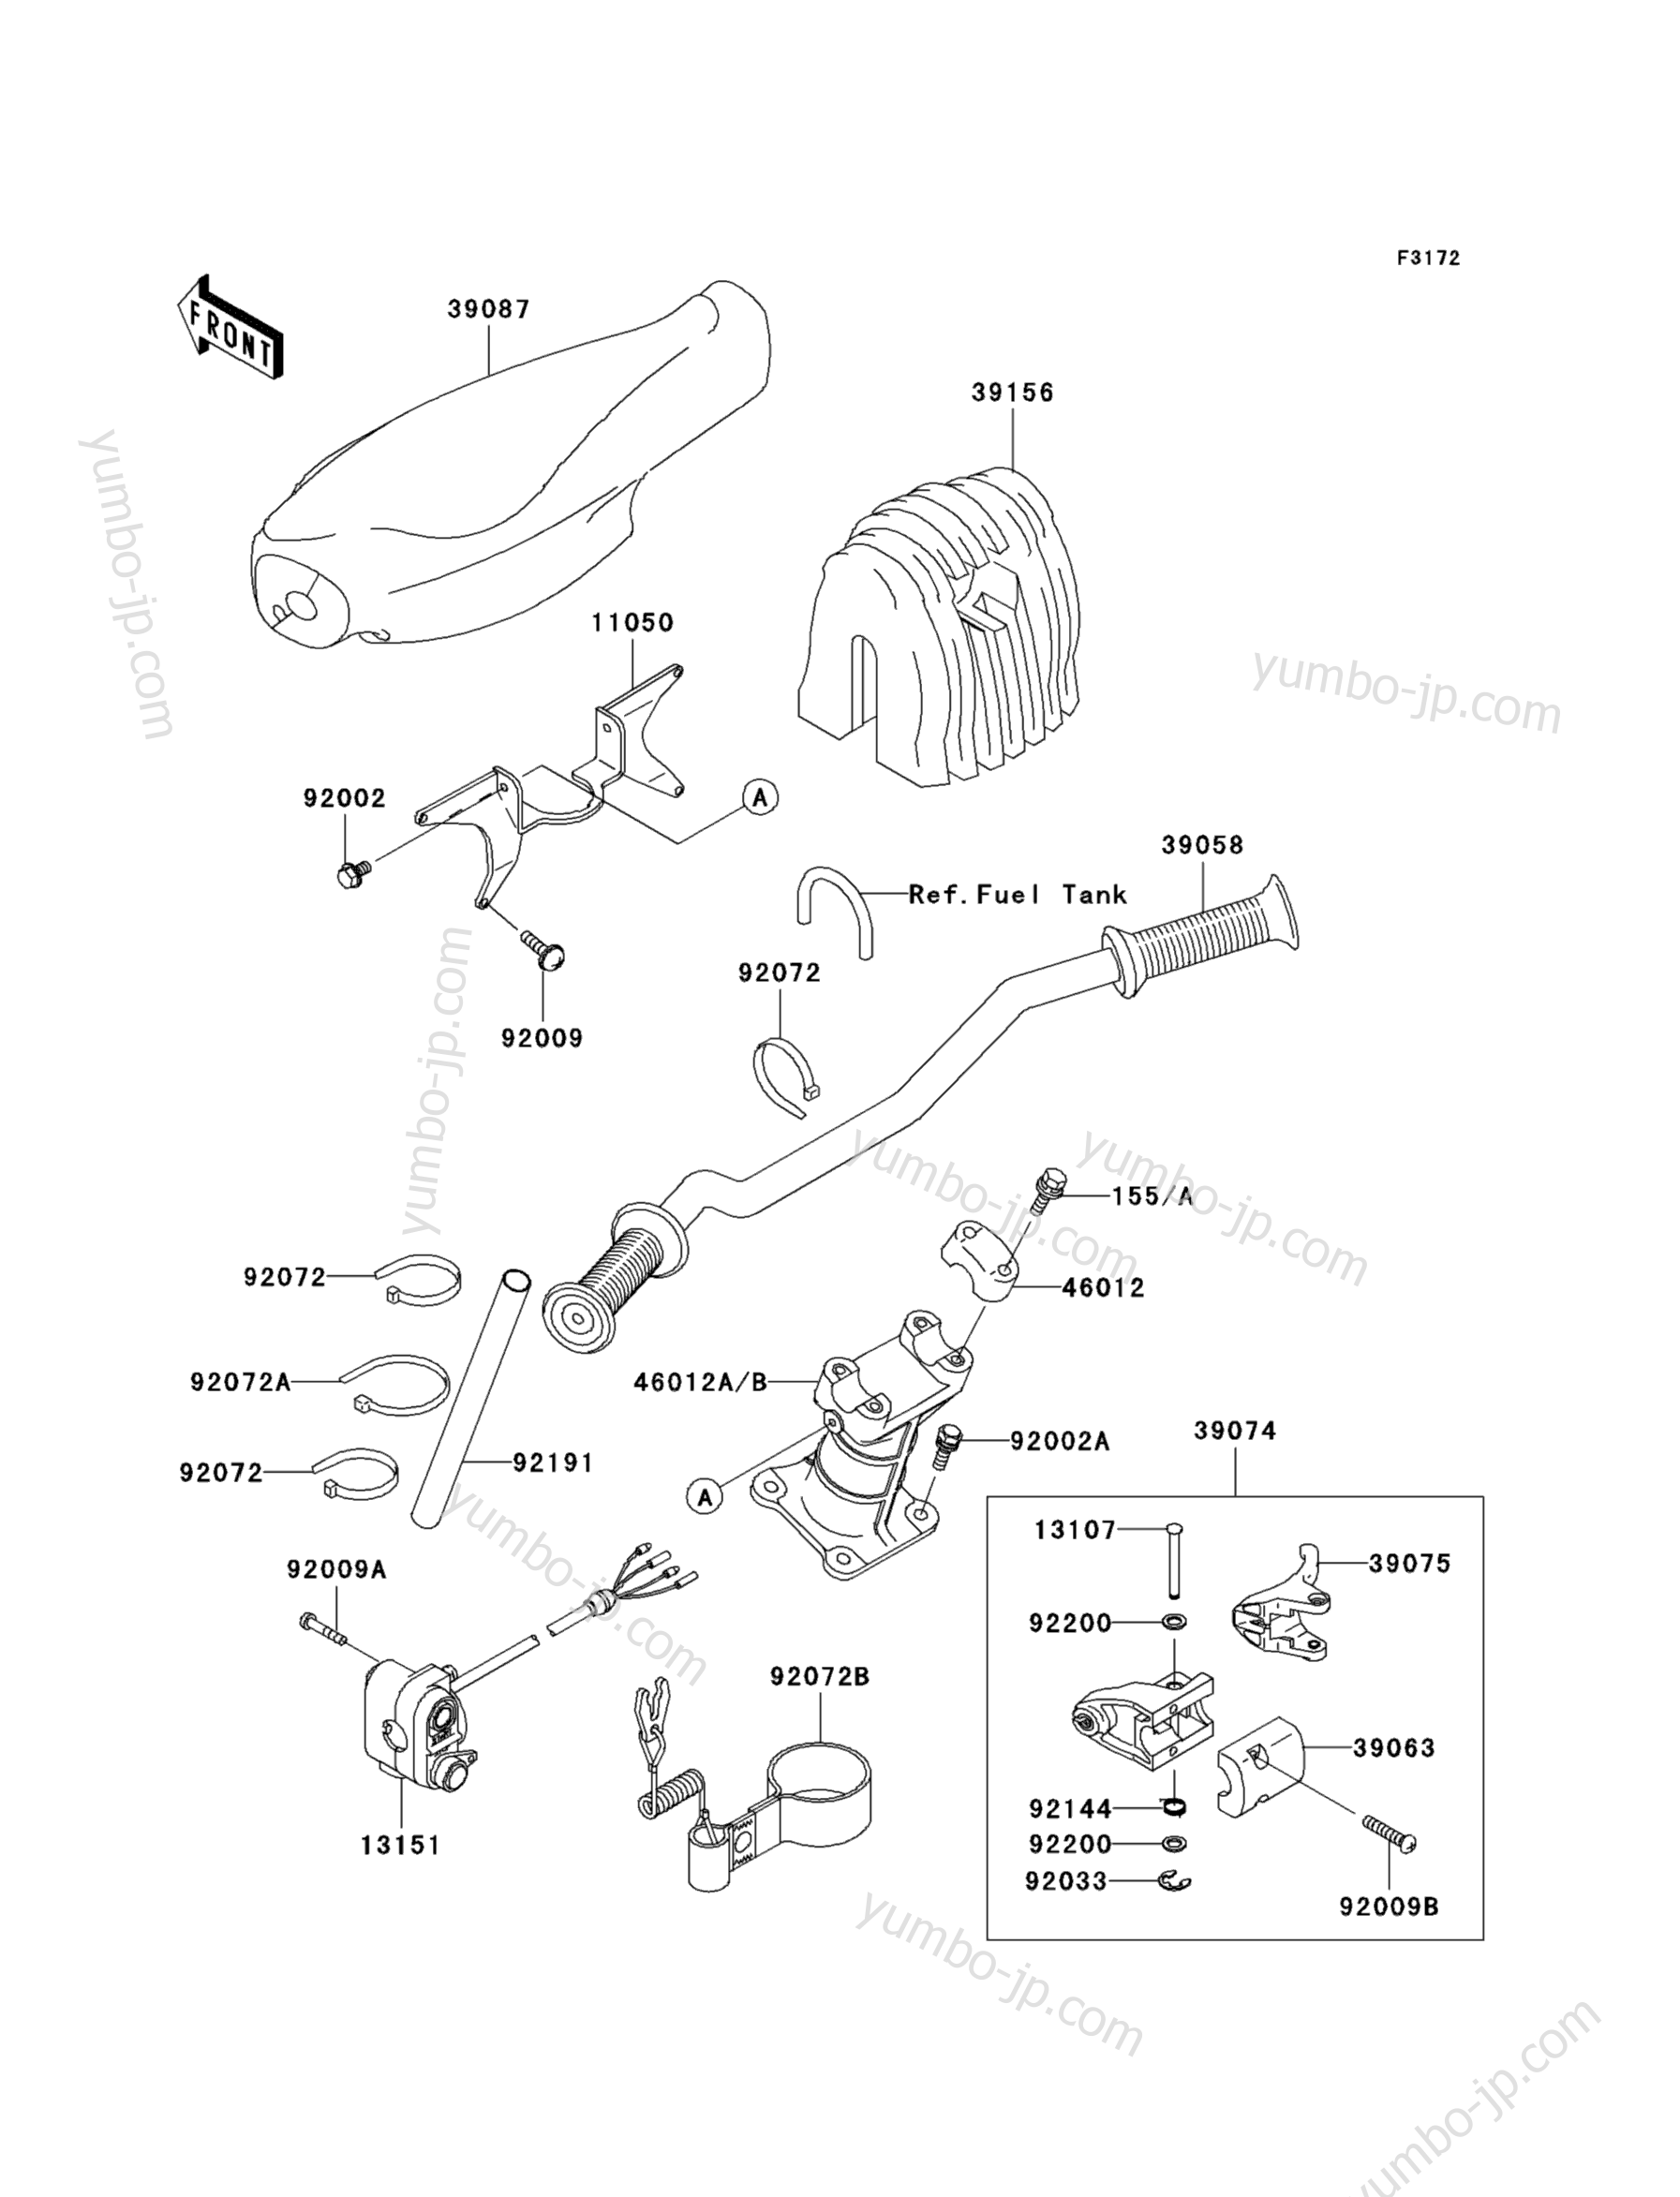 Румпель (рукоятка управления) для гидроциклов KAWASAKI JET SKI 900 STX (JT900-E2) 2005 г.